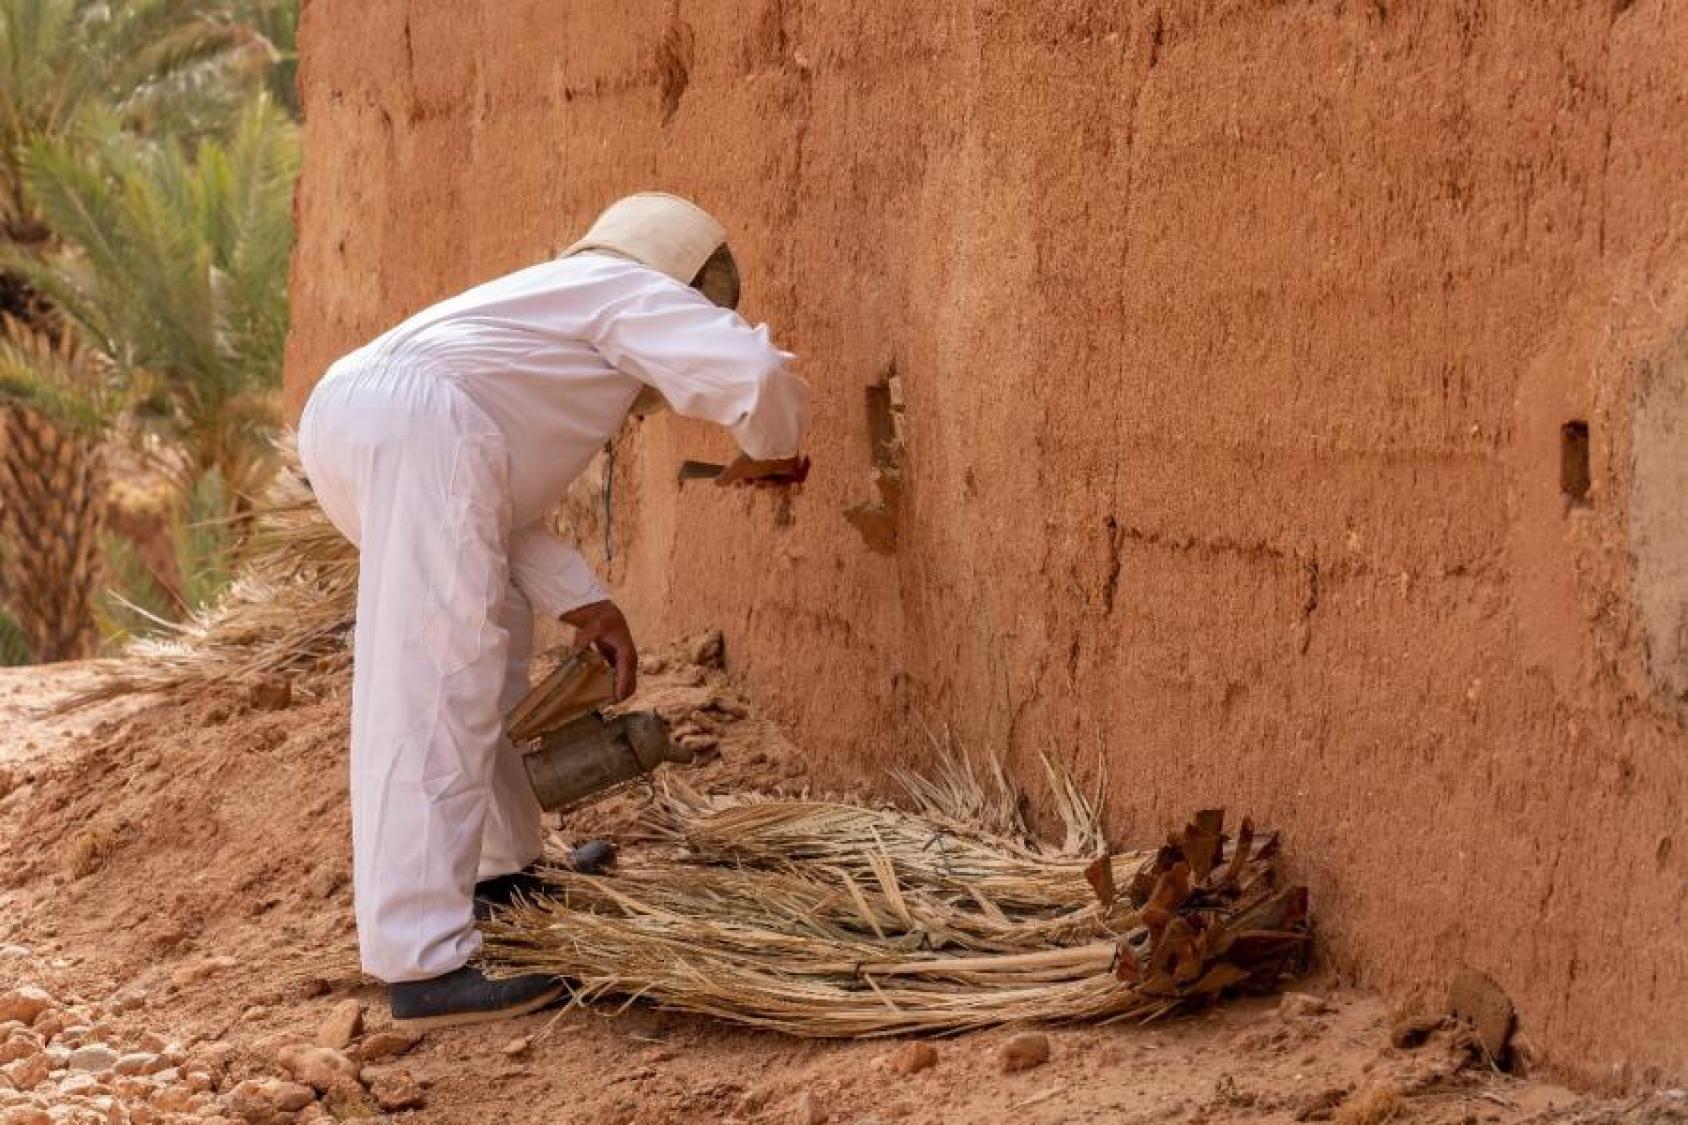 Au Maroc, une personne vêtue d’une combinaison de protection blanche se penche vers un mur en terre cuite au pied duquel sont déposées des branches de palmiers desséchées.